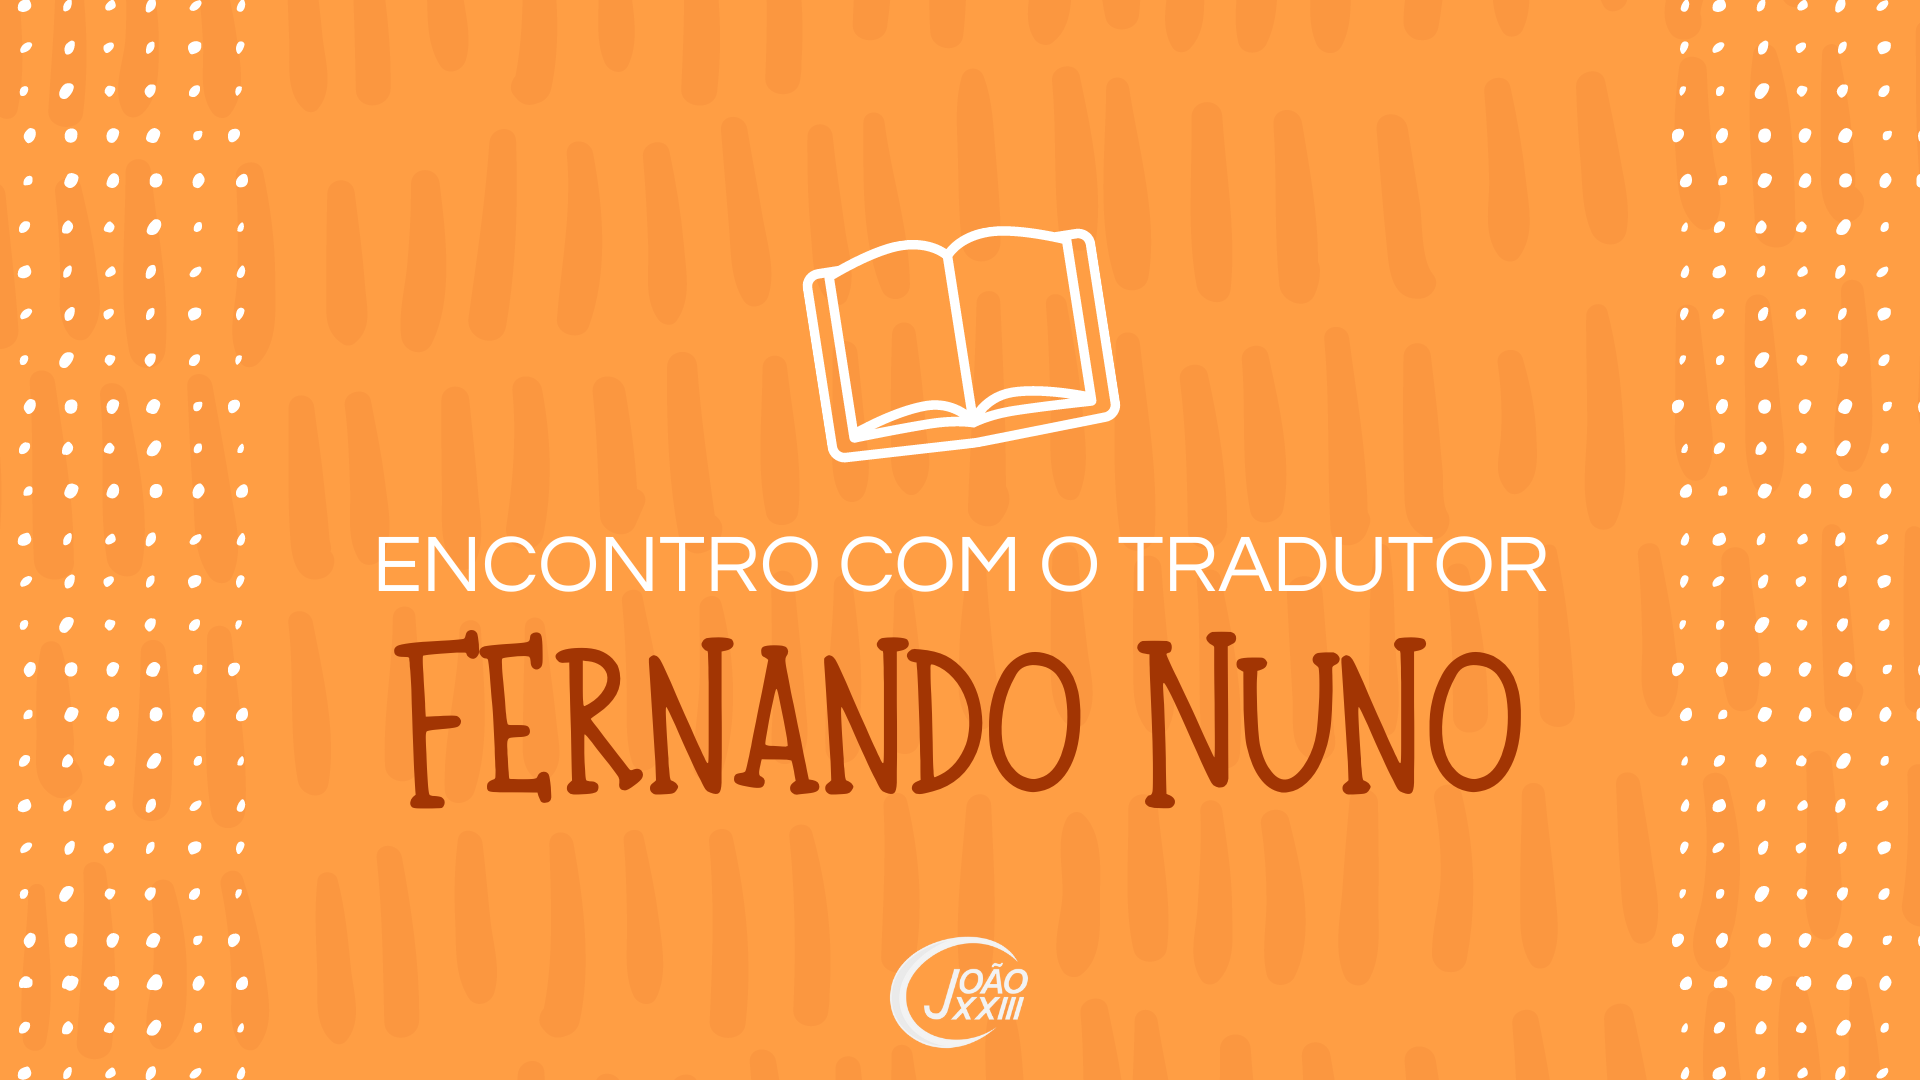 You are currently viewing Encontro com o tradutor Fernando Nuno